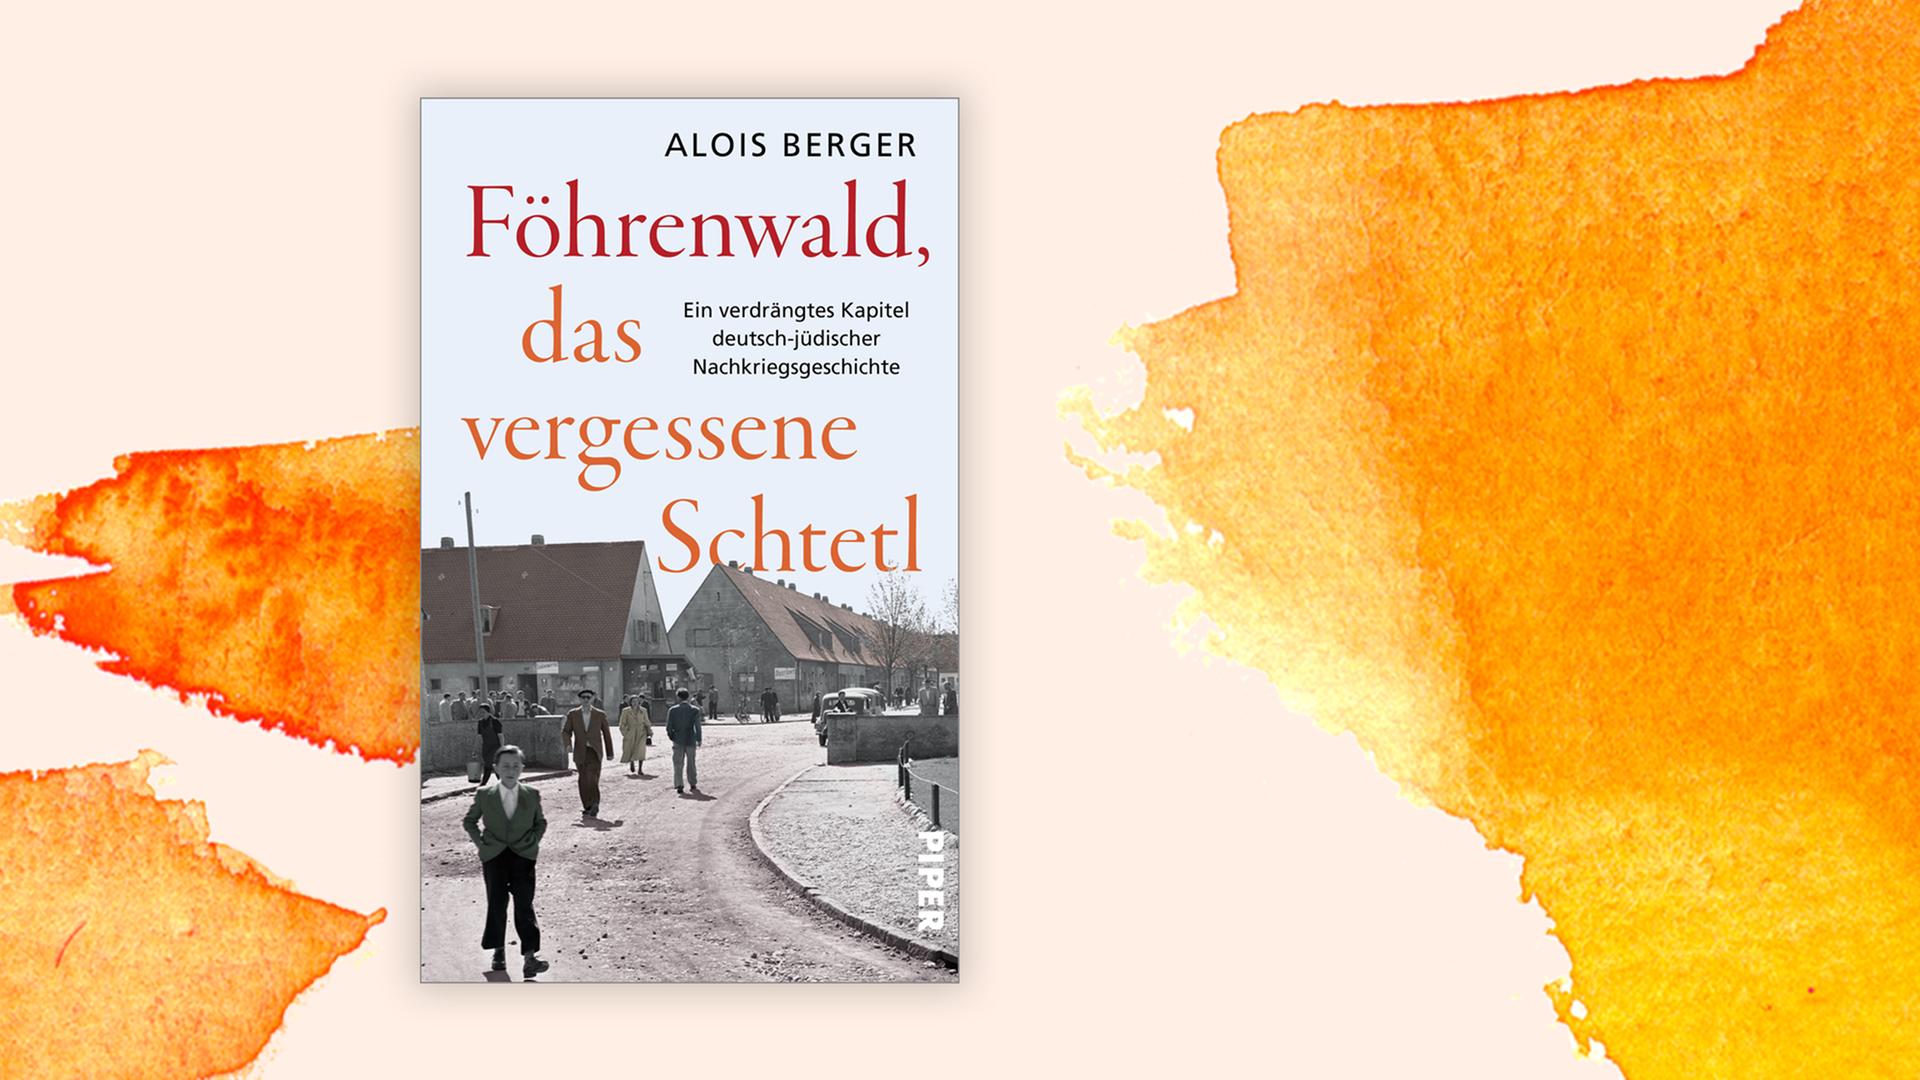 Das Buchcover "Föhrenwald, das vergessene Schtetl" von Alois Berger ist vor einem grafischen Hintergrund zu sehen.